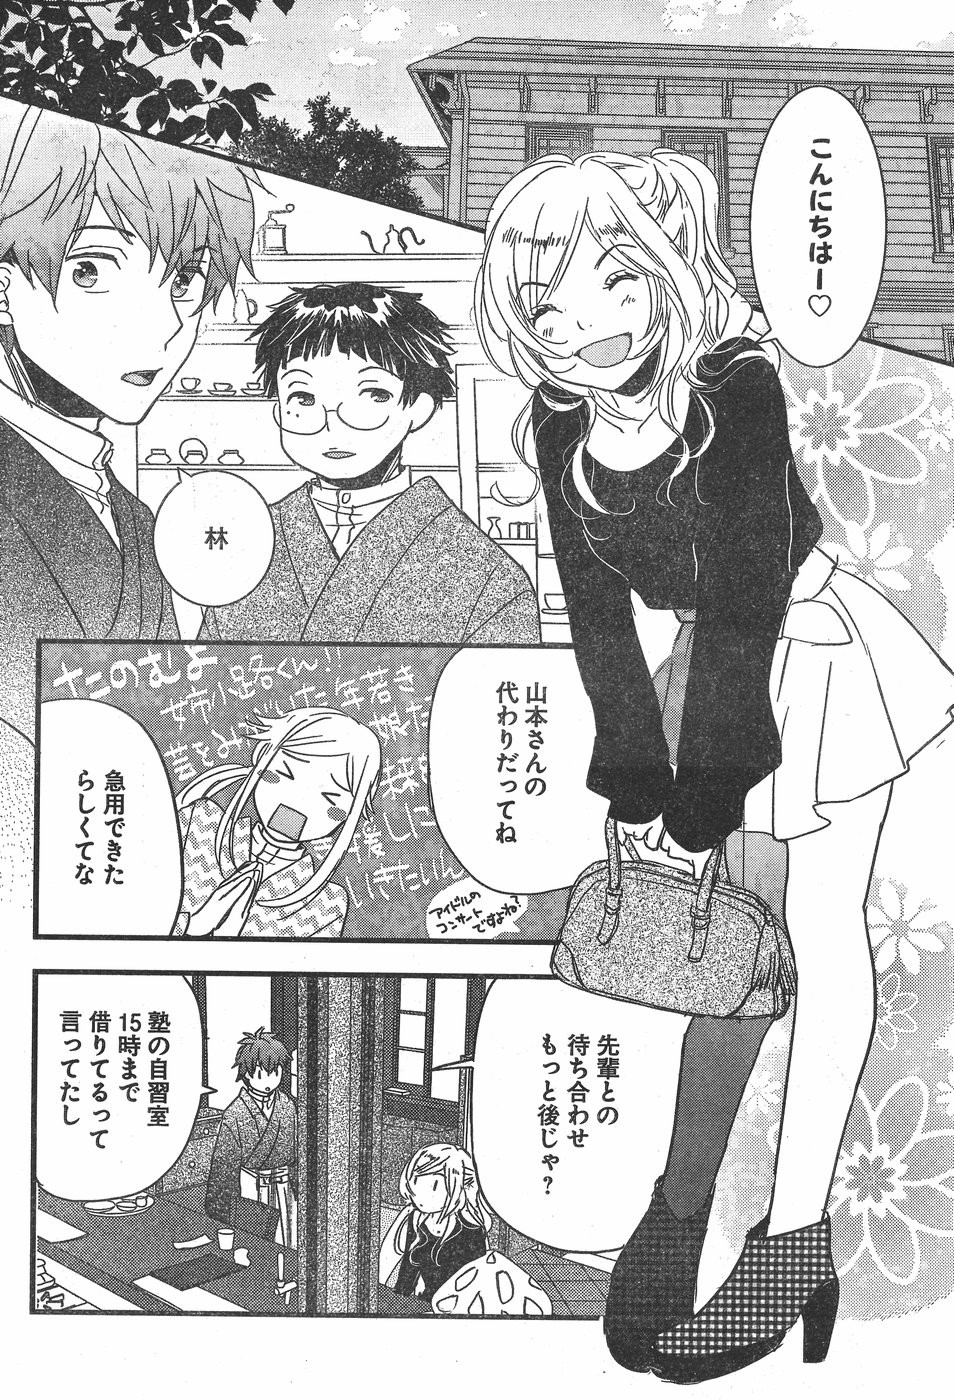 Bokura wa Minna Kawaisou - Chapter 84 - Page 2